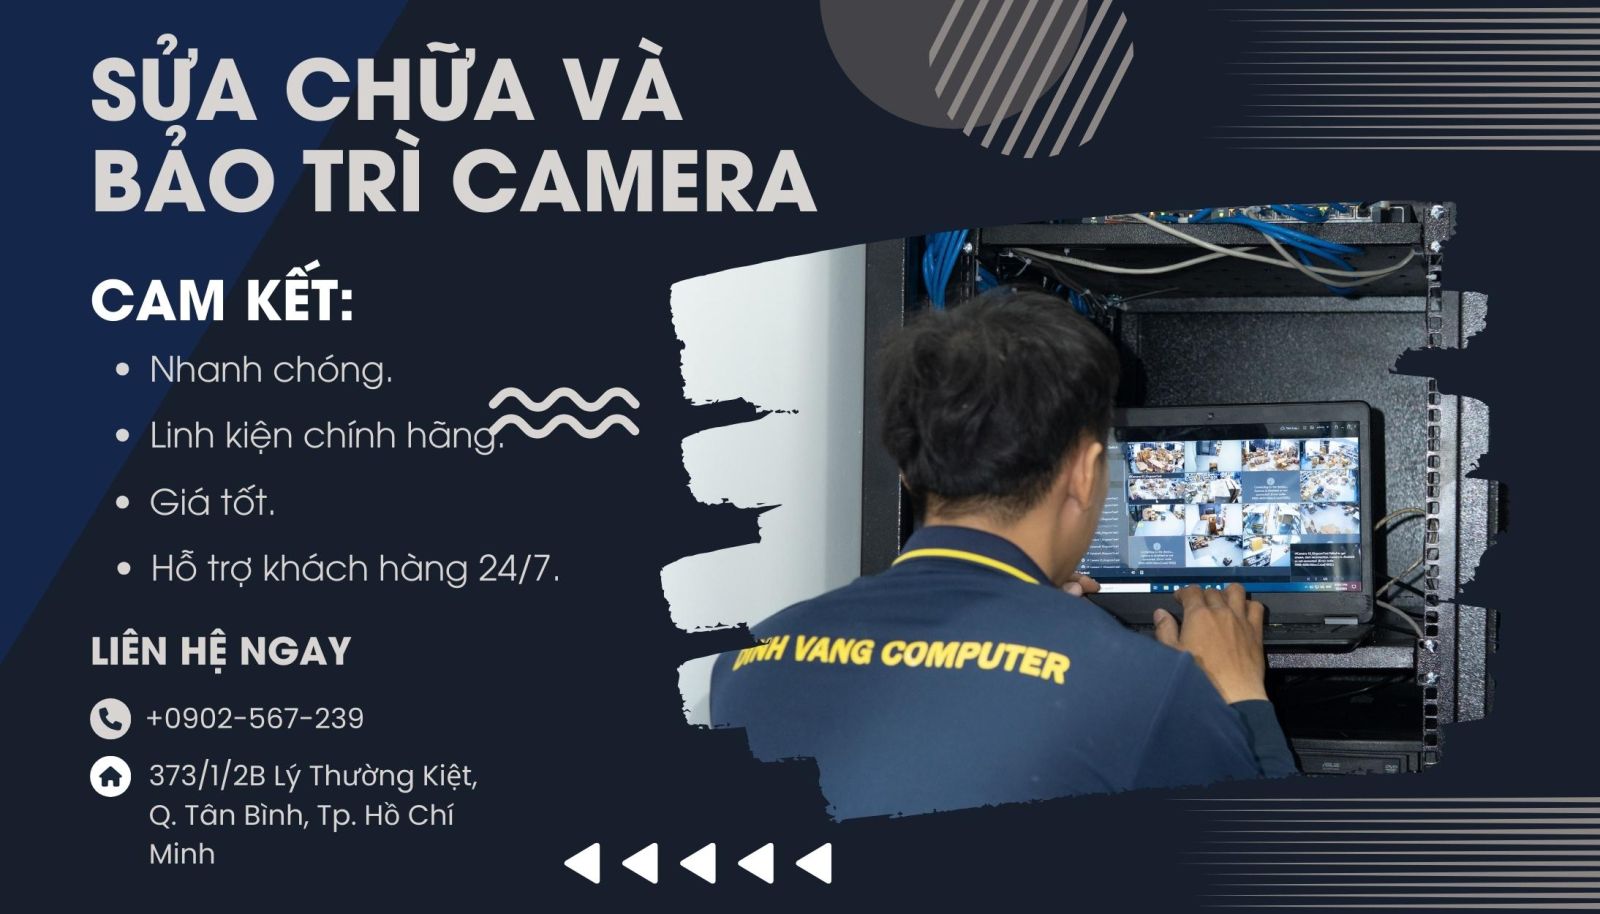 Đỉnh Vàng Computer chuyên cung cấp dịch vụ bảo trì và sửa chữa trọn bộ 7 camera tại TPHCM và Bình Dương.